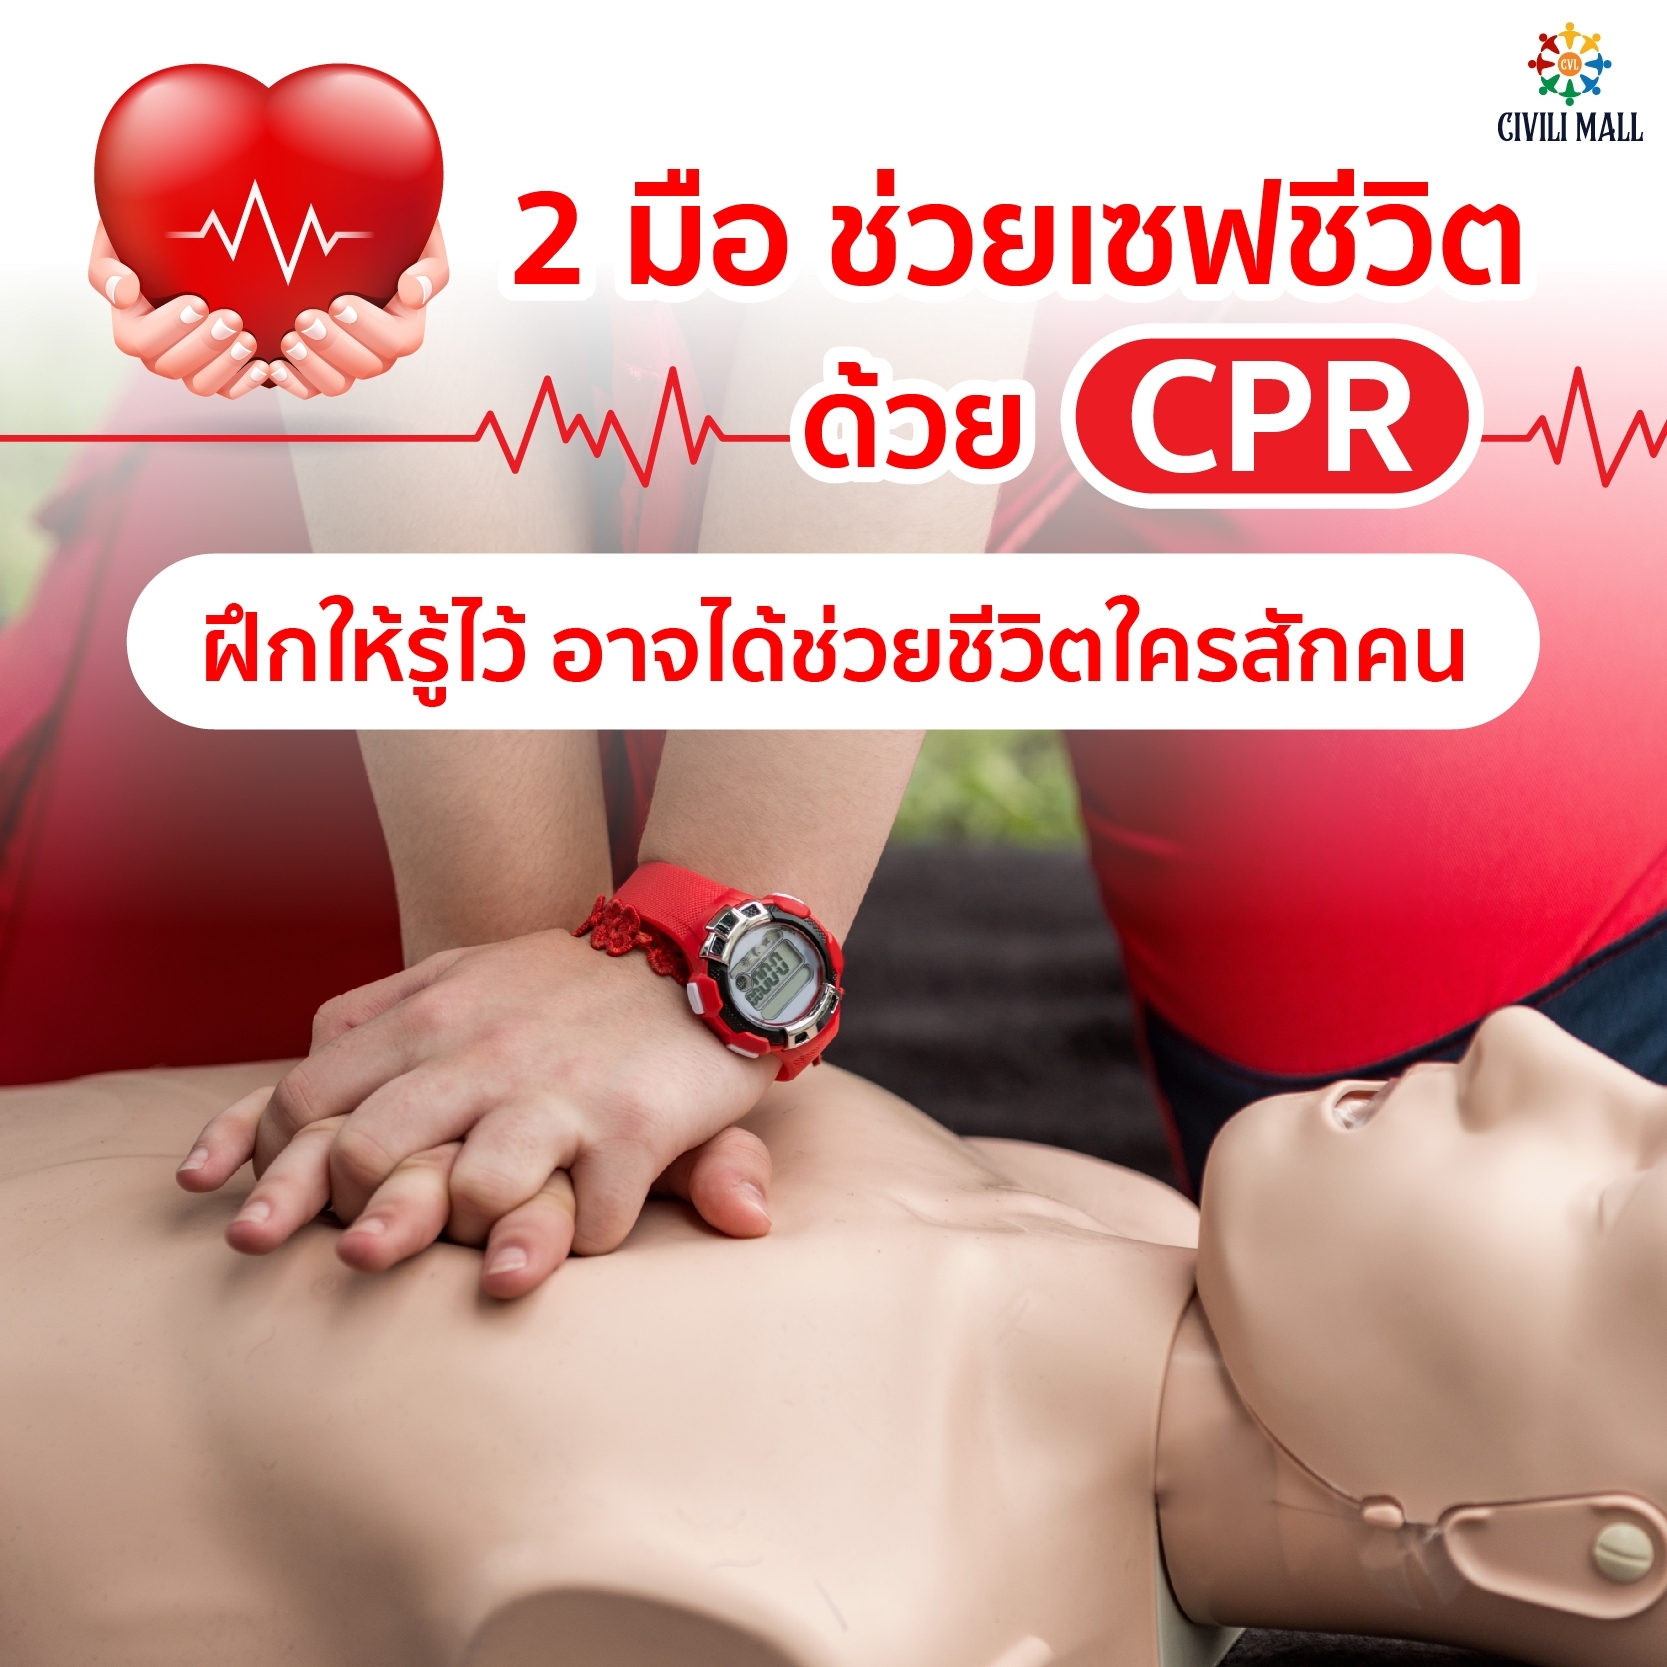 🤲 2 มือ ช่วยเซฟชีวิต ด้วย CPR  ฝึกให้รู้ไว้ อาจได้ช่วยชีวิตใครสักคน 📌